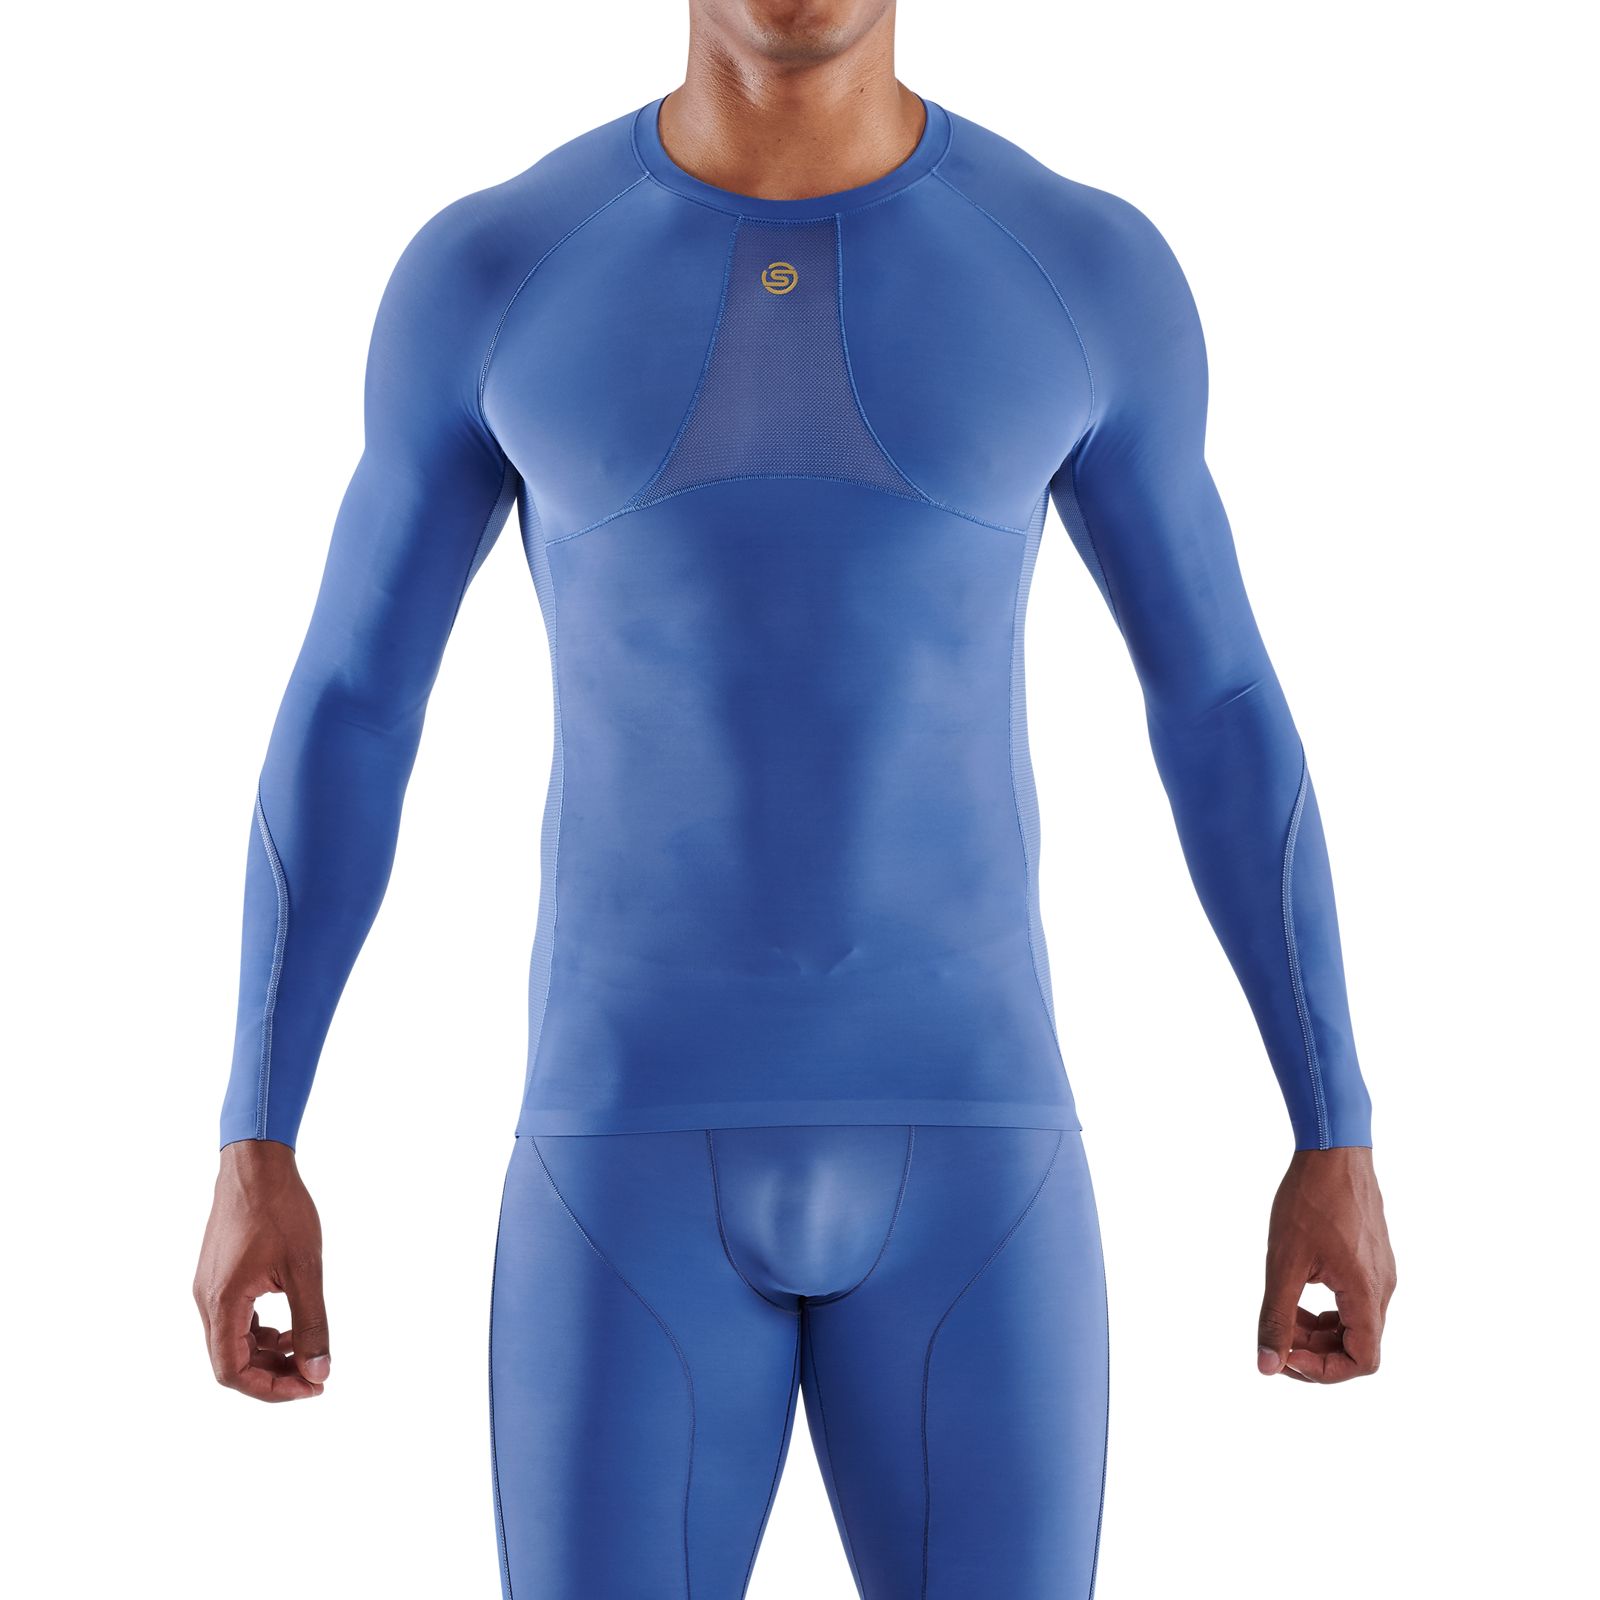 SKINS SERIES-2 Men's Long Sleeve Navy Blue – Skins Compression